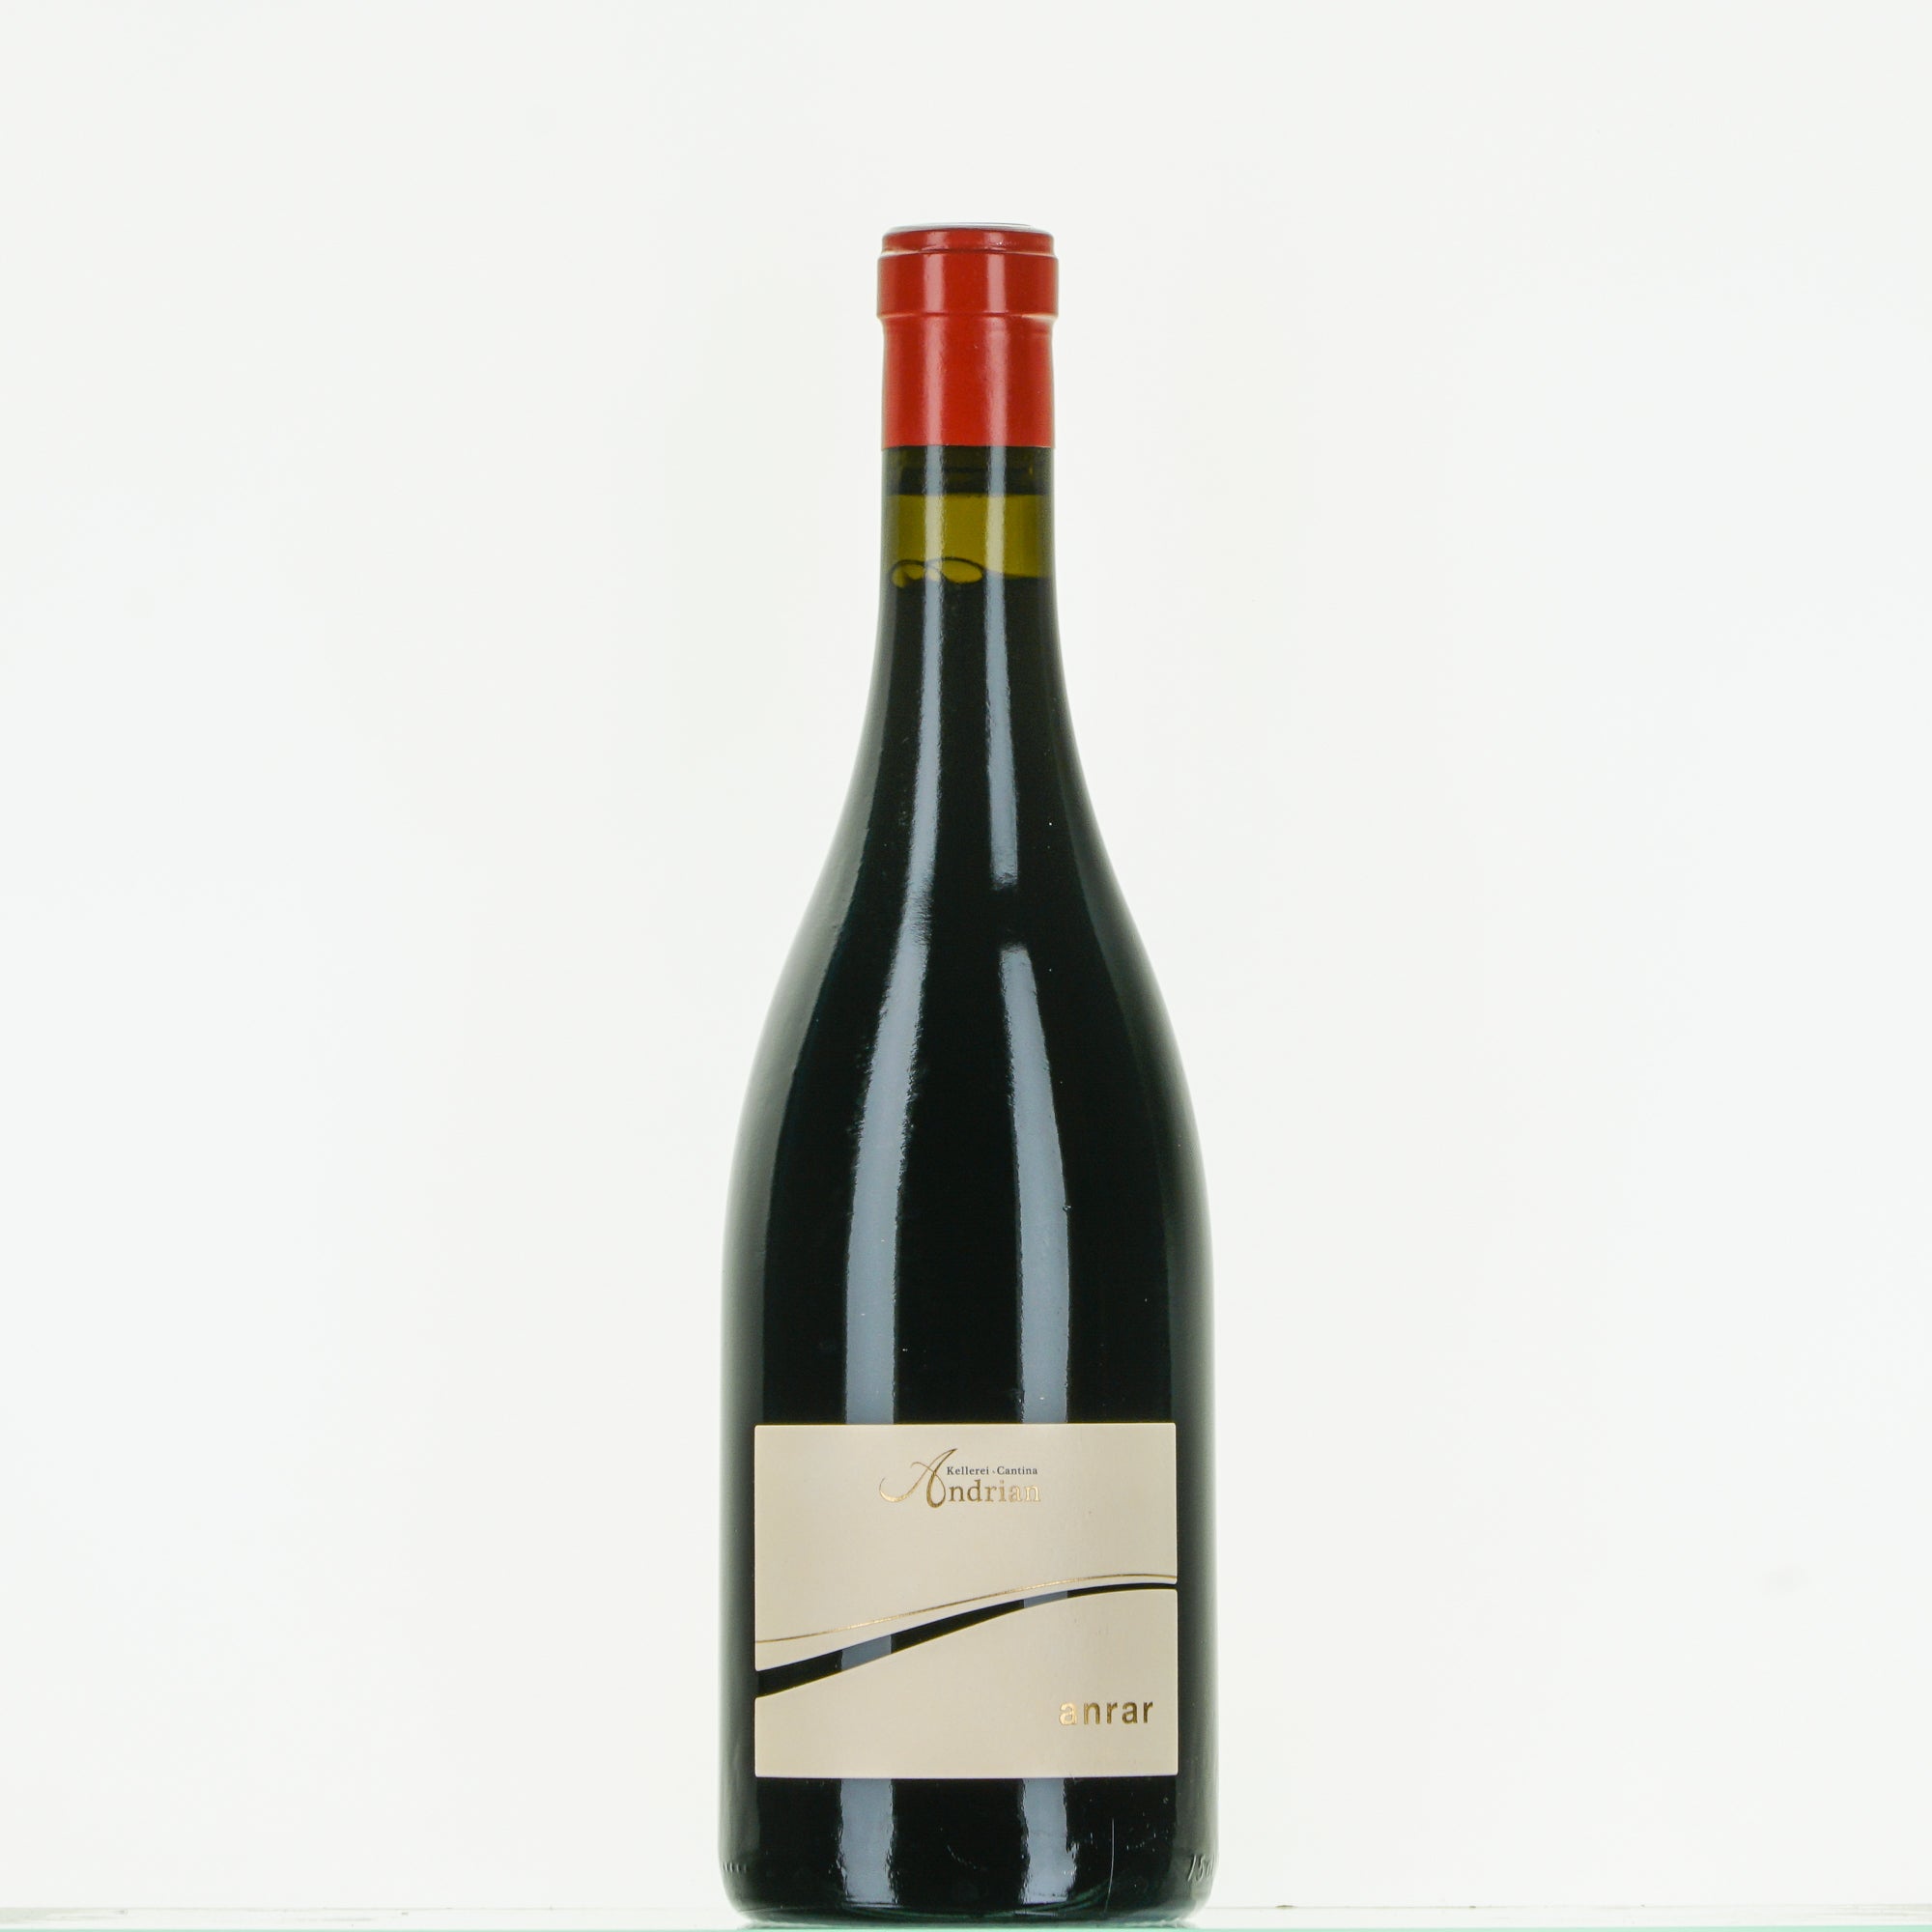 Anrar Pinot Nero Riserva 2015 doc Andrian lt.0,750